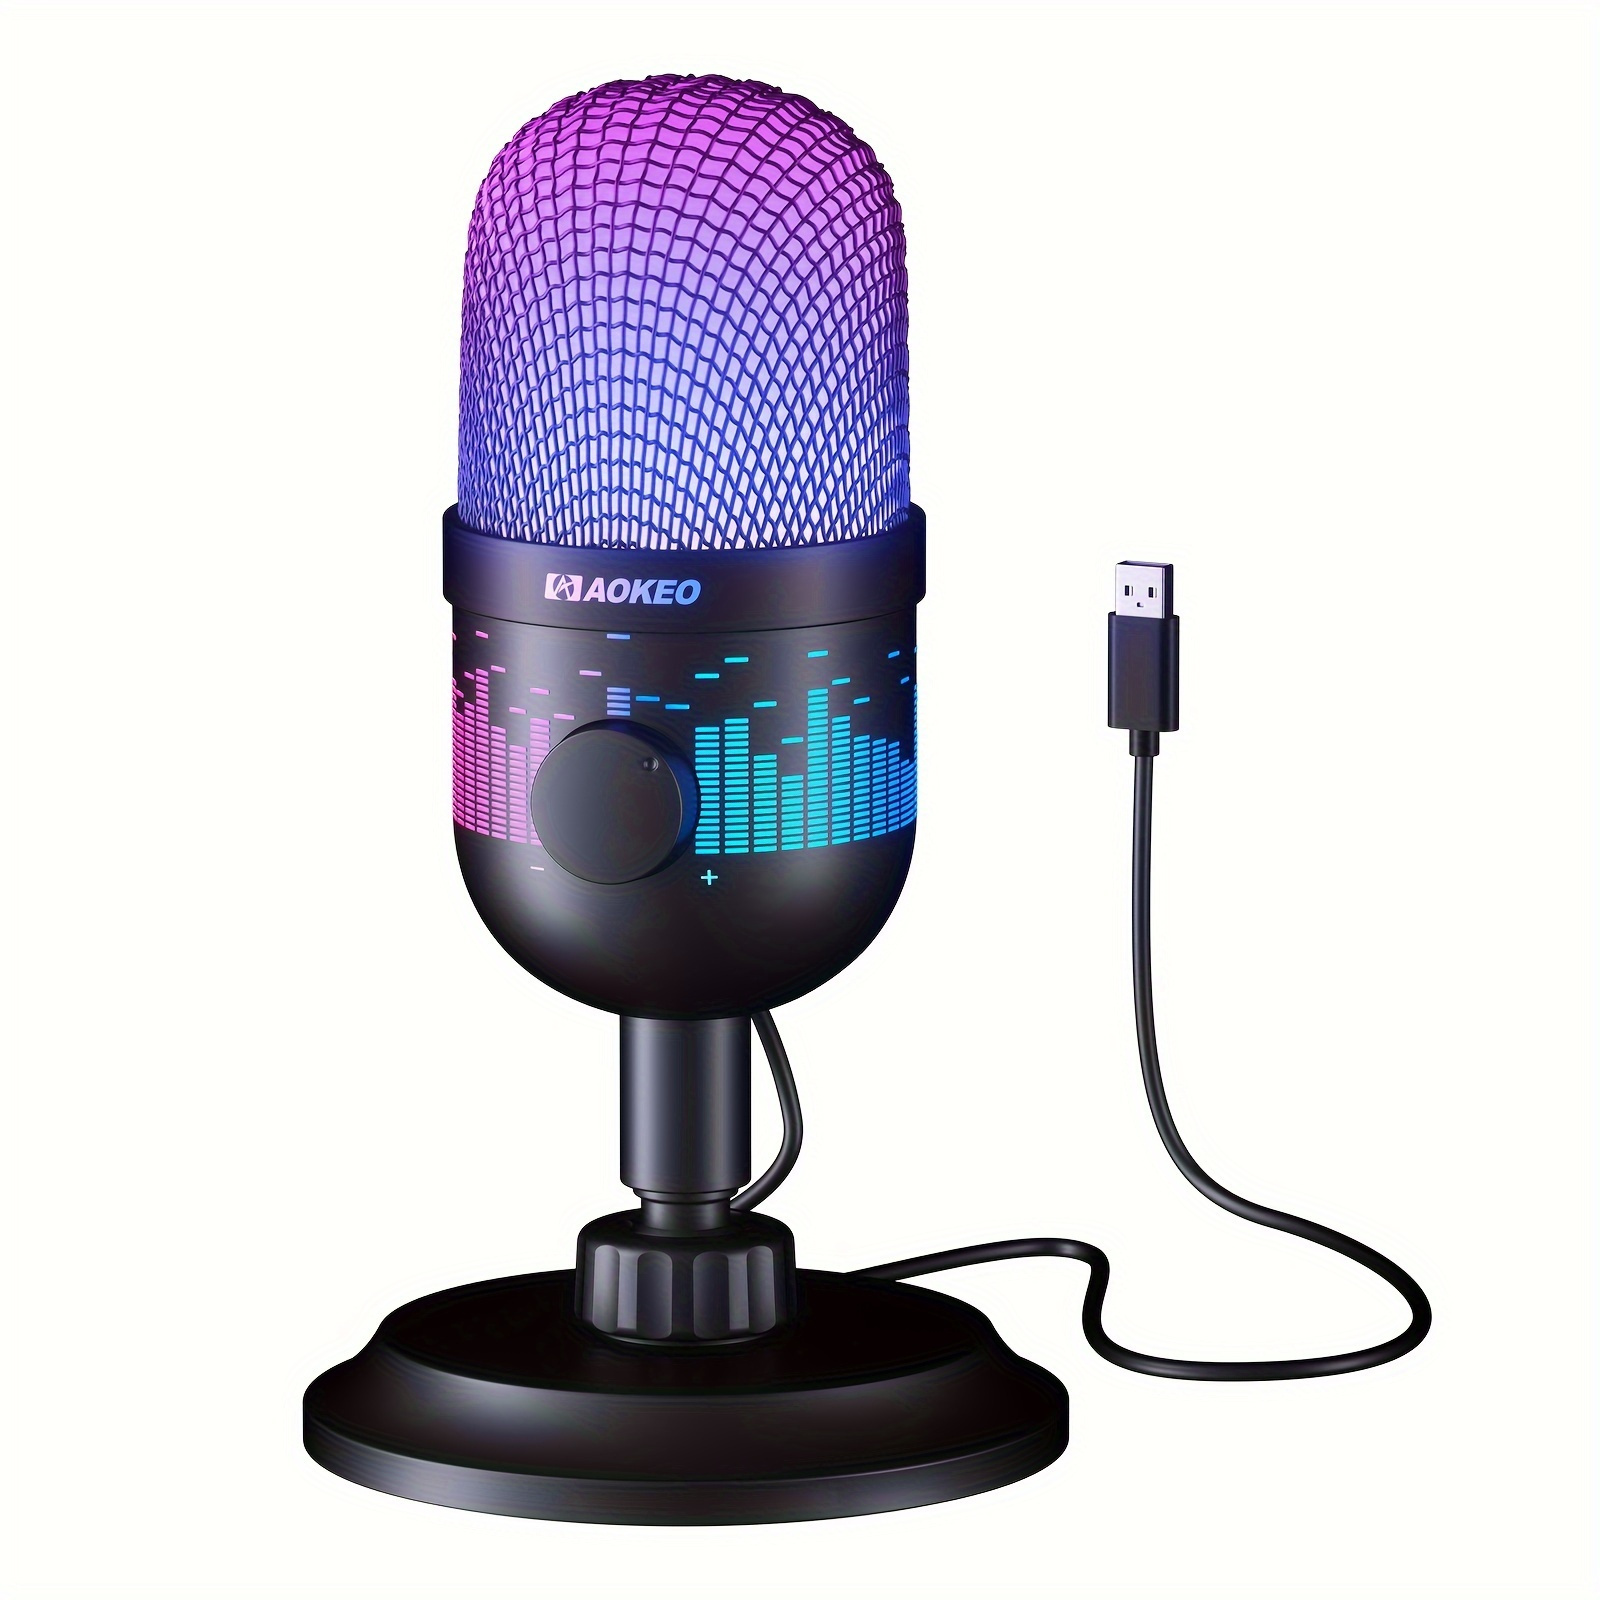 Micrófono Lavalier – Micrófono de solapa profesional para grabación,  podcast, discurso, vlog, video,  – Micrófono externo para iPhone,  Android